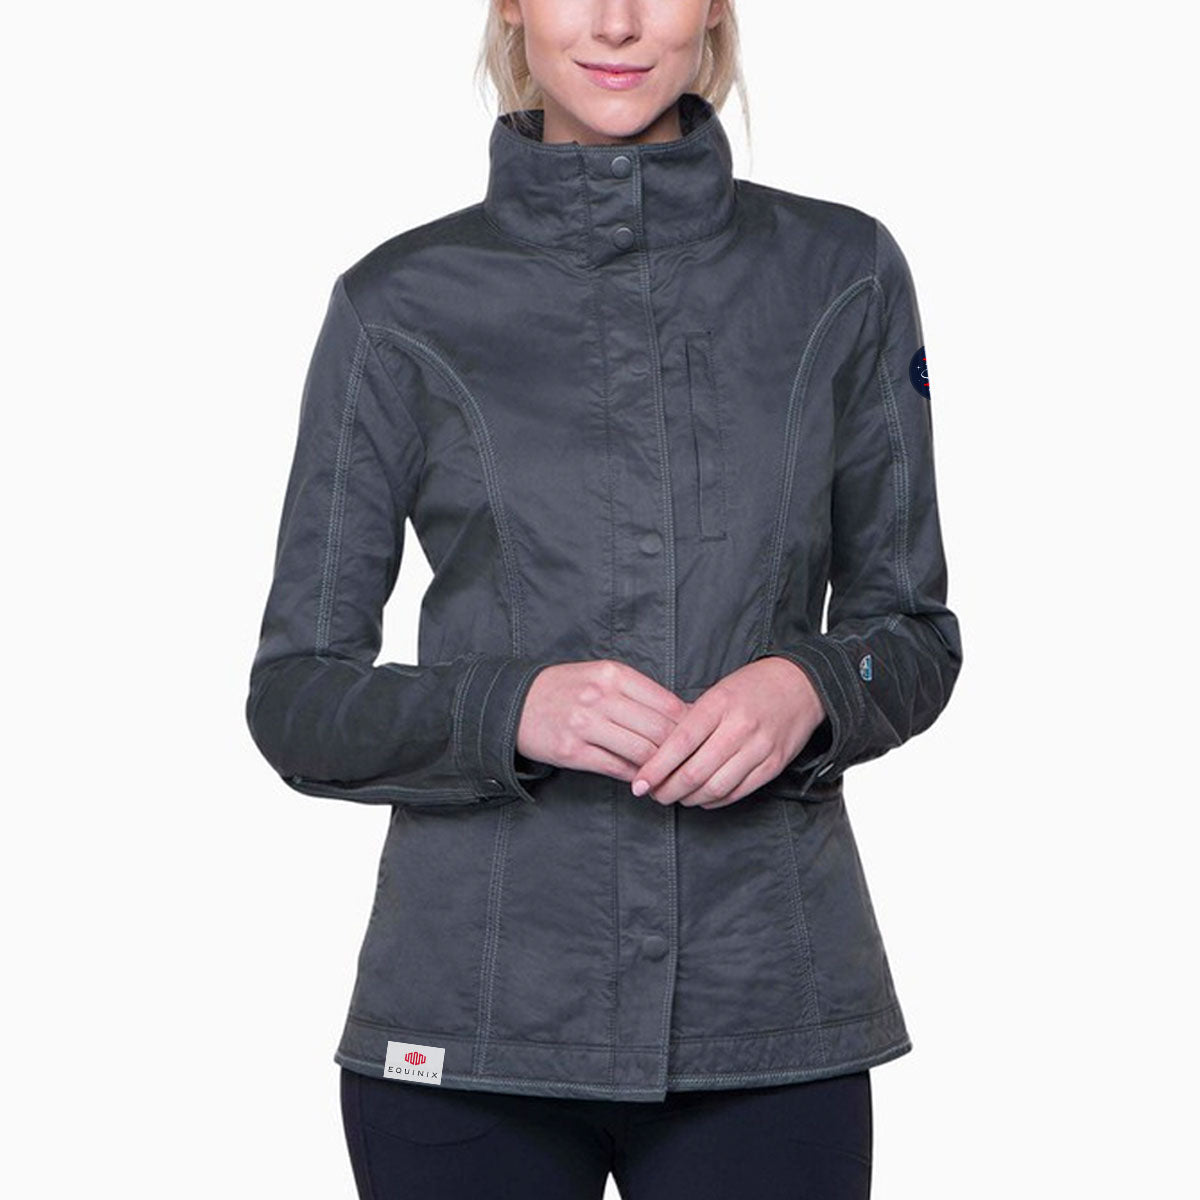 Kuhl Womens Projekt Fleece Jacket Gray Medium